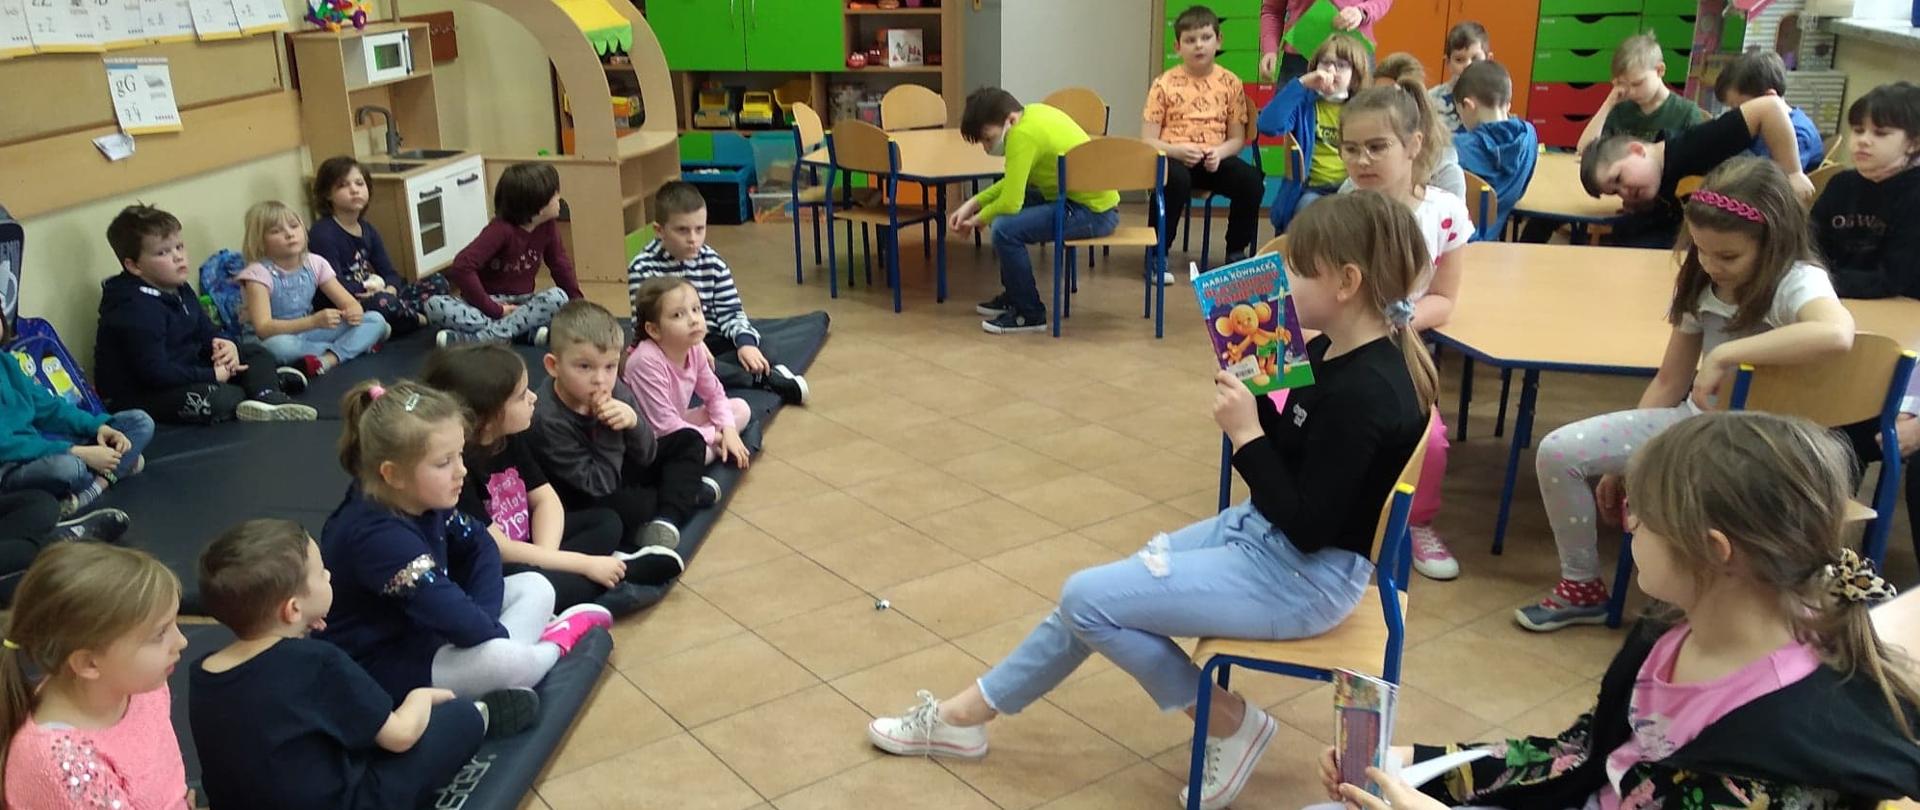 Dzieci po jednej stronie sali siedzące na matach na podłodze a na przeciwko nich inne siedzące 